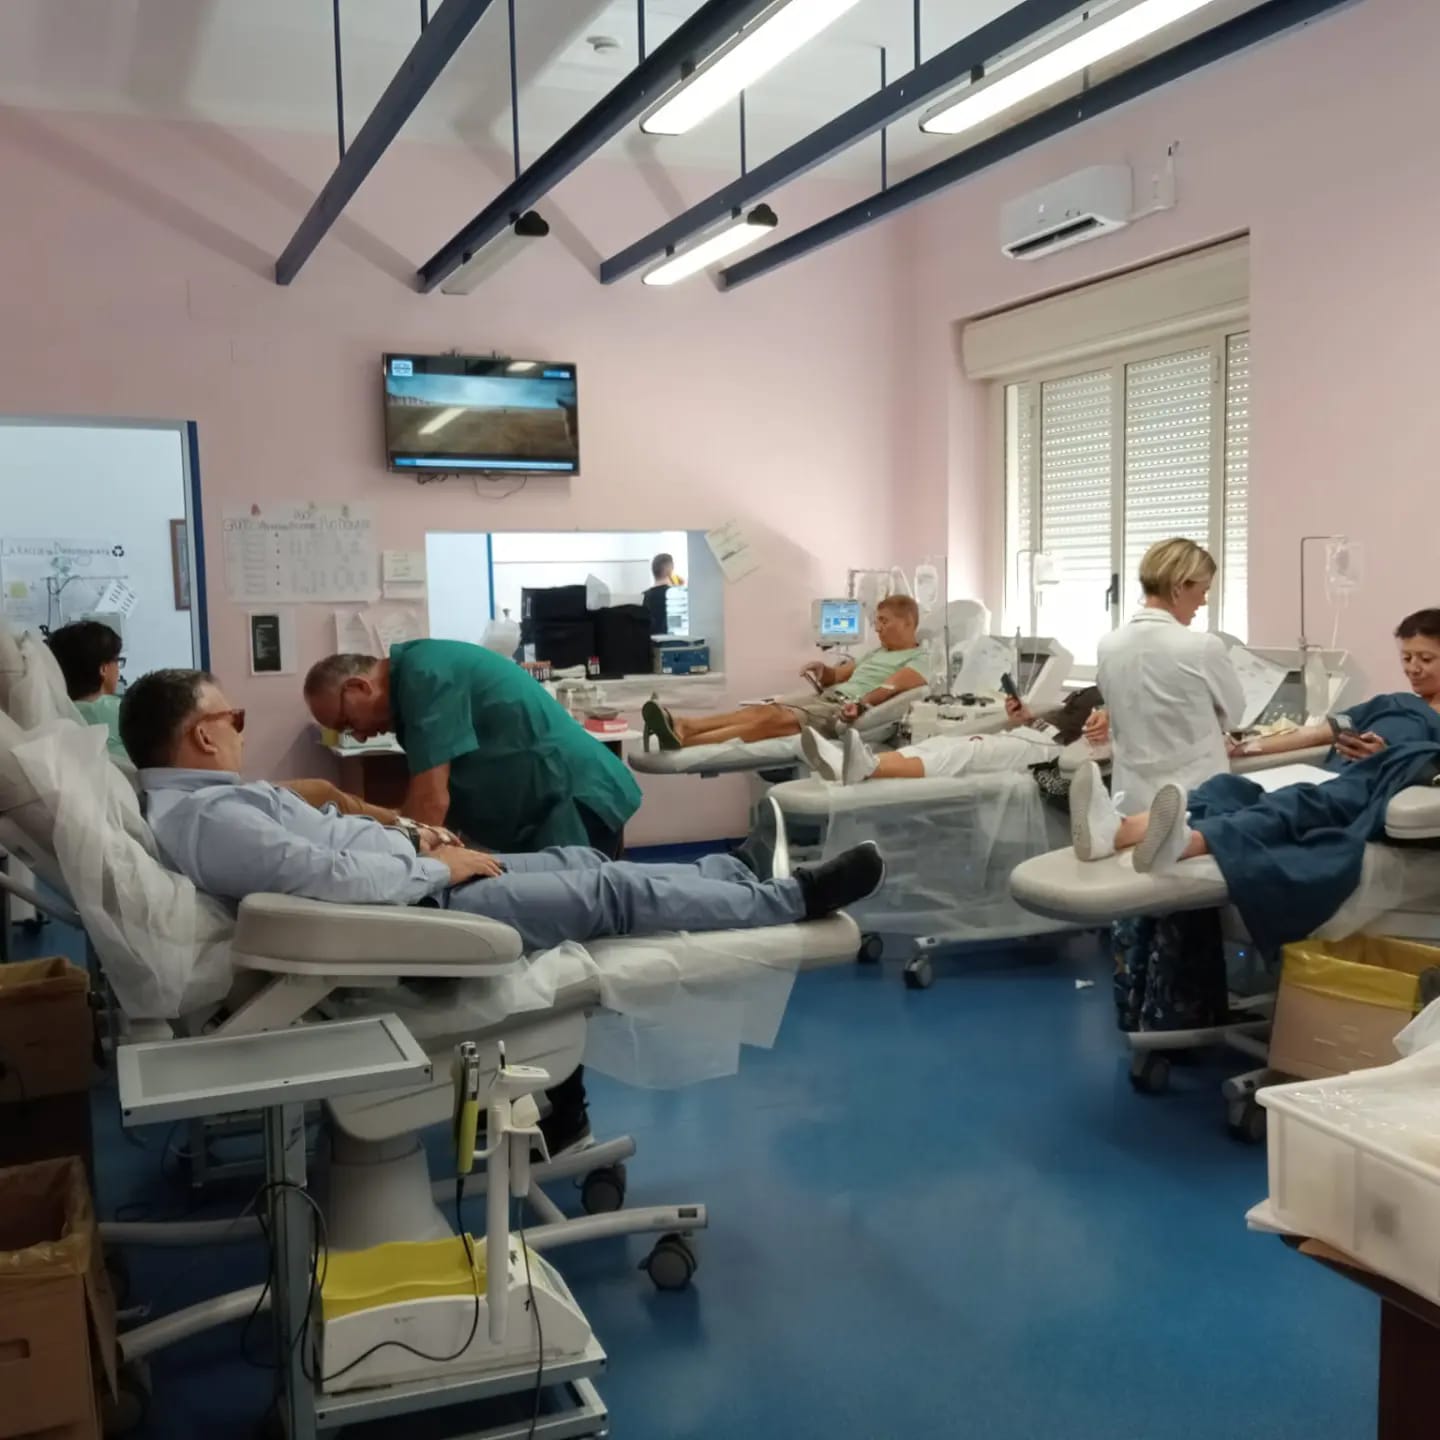 DONAZIONE SANGUE - Un video donato a “Linfa Rossa” di Palermo. Riccardo Rossi: “Il mio, un atto di solidarietà e amore verso gli altri”